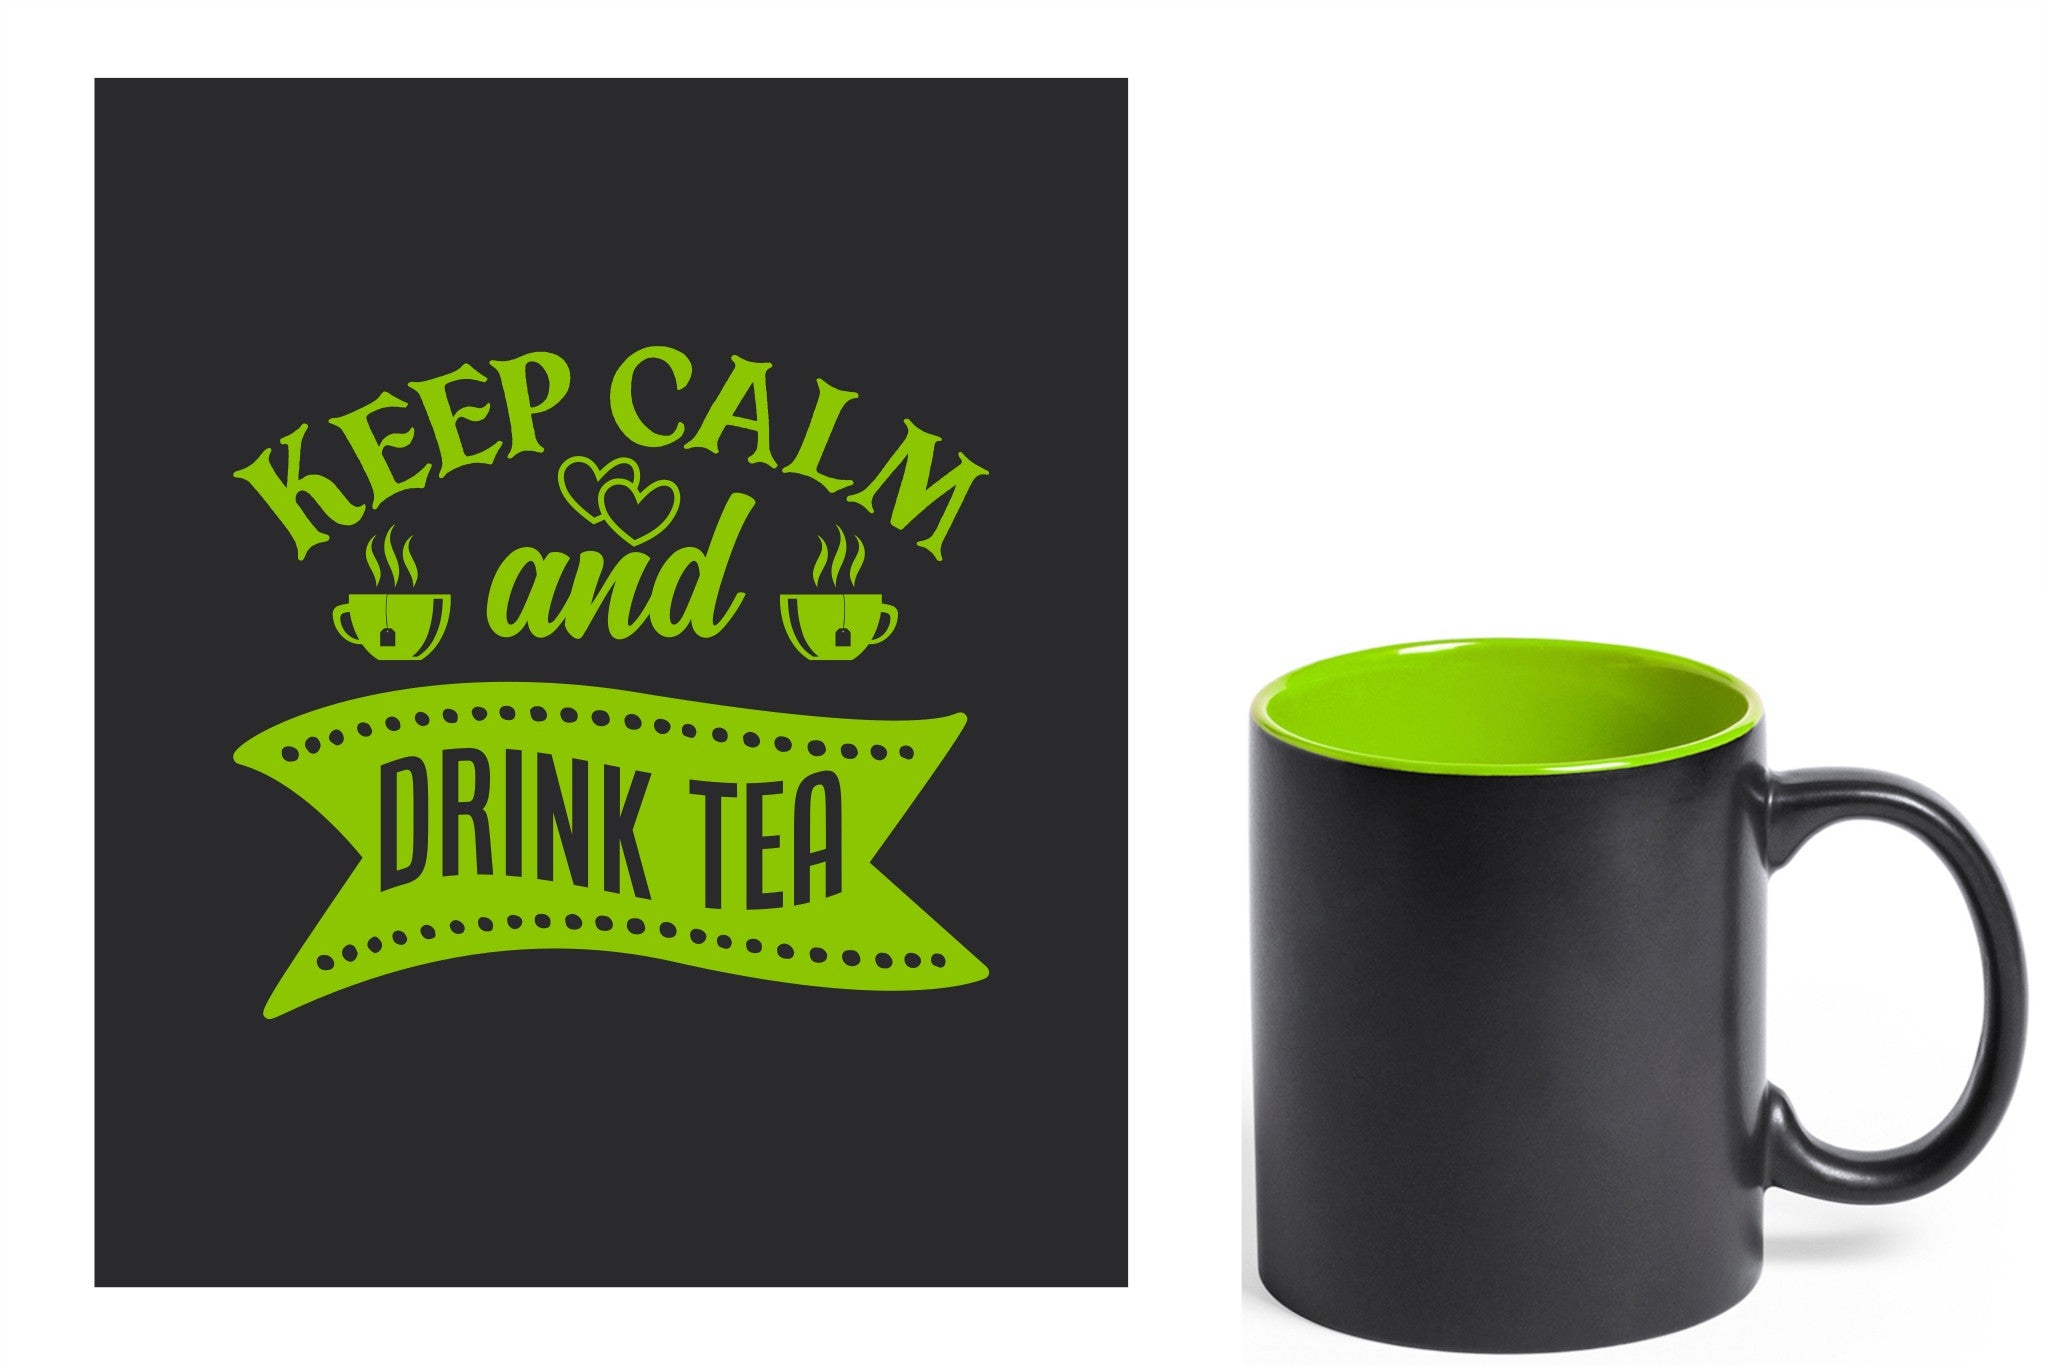 zwarte keramische mok met groene gravure  'Keep calm and drink tea'.